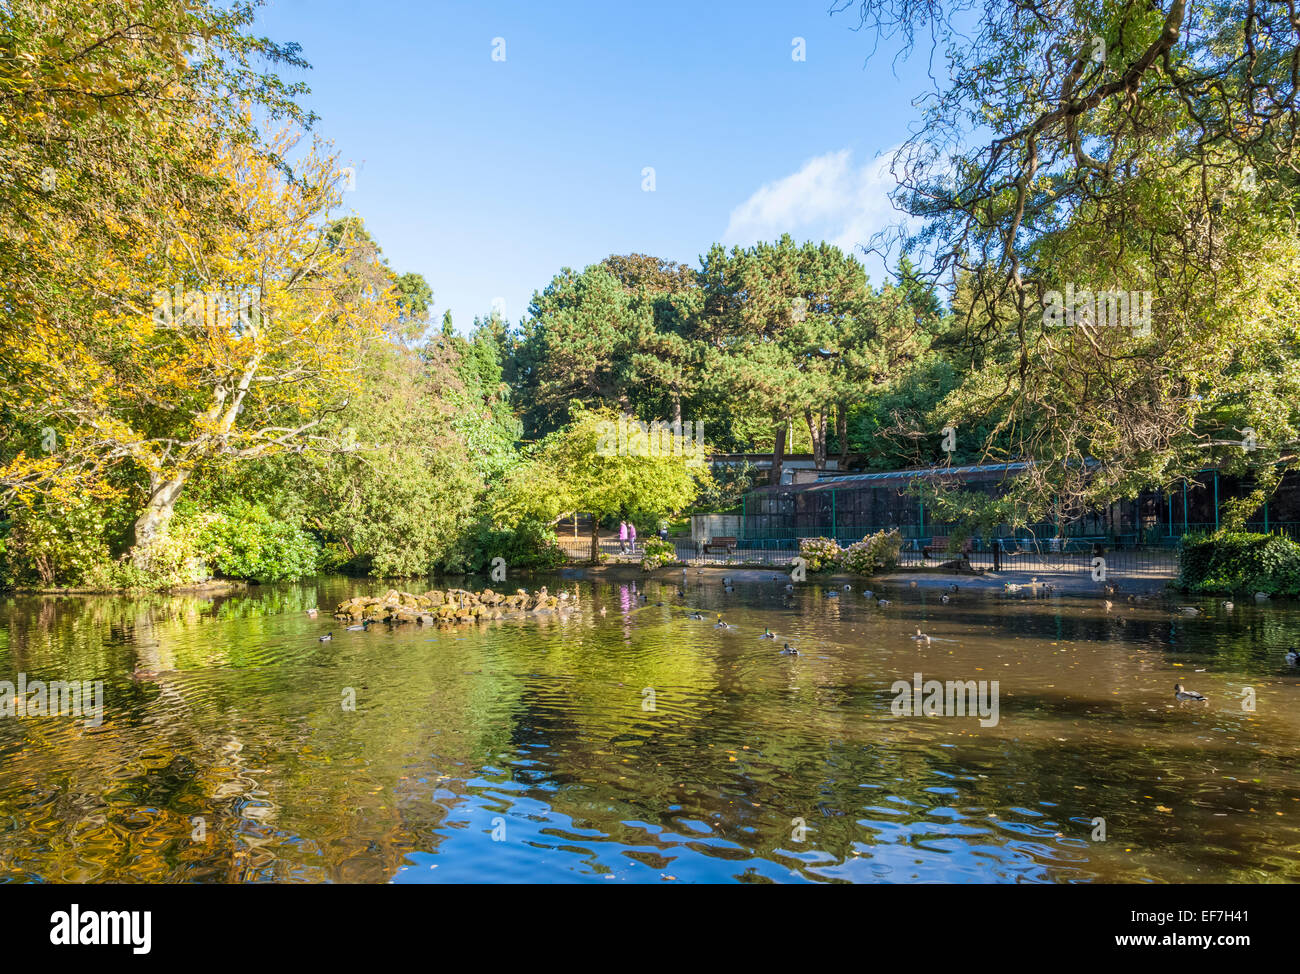 Le lac à l'Arboretum, un parc public dans la ville de Nottingham, Angleterre, RU Banque D'Images